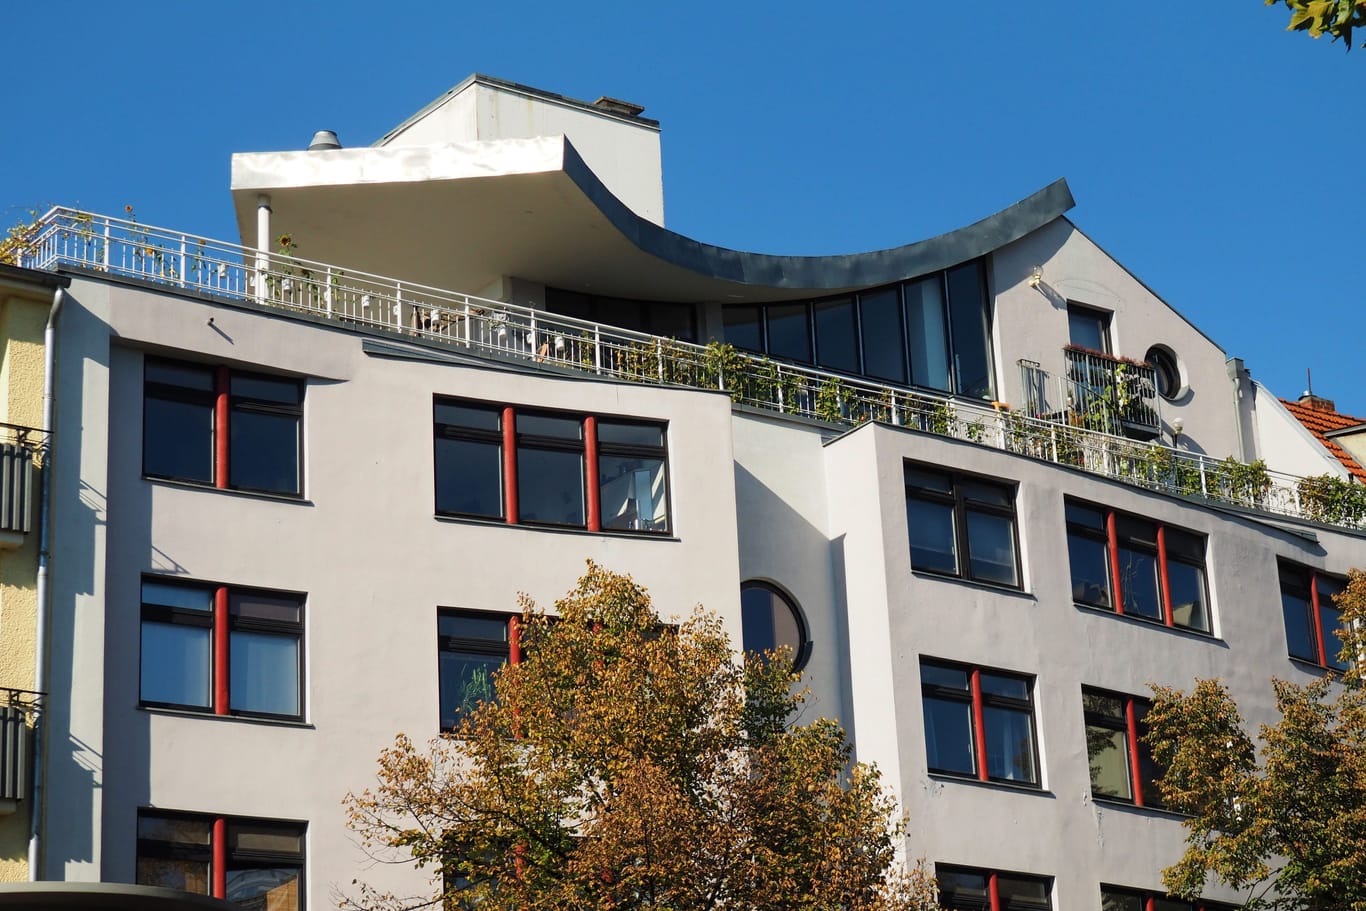 Penthouse (Symbolbild): Der Preis einer Bremer Wohnung macht sprachlos.